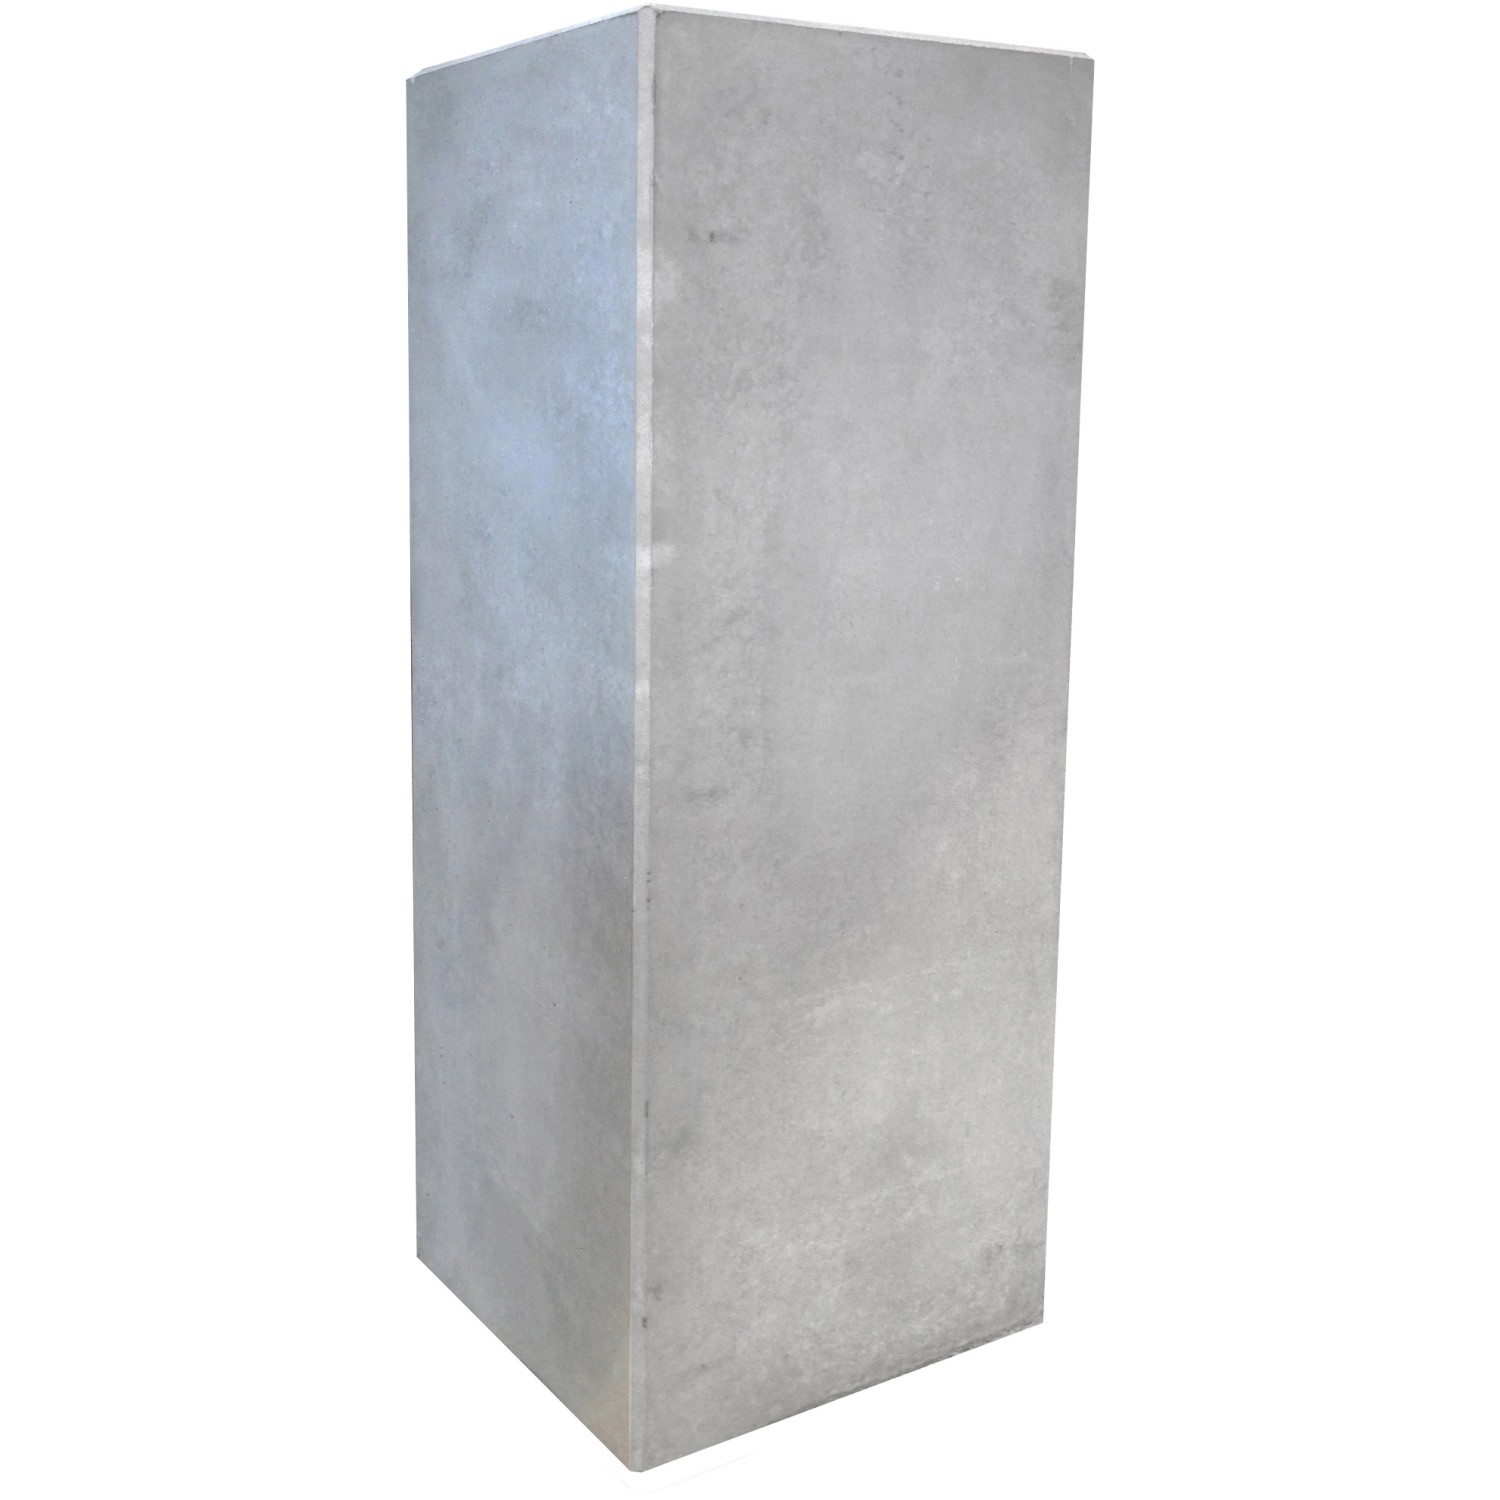 Mauerscheiben-Ecke Bewehrt Betonglatt Grau 130 cm x 50 cm x 50 cm von Kann